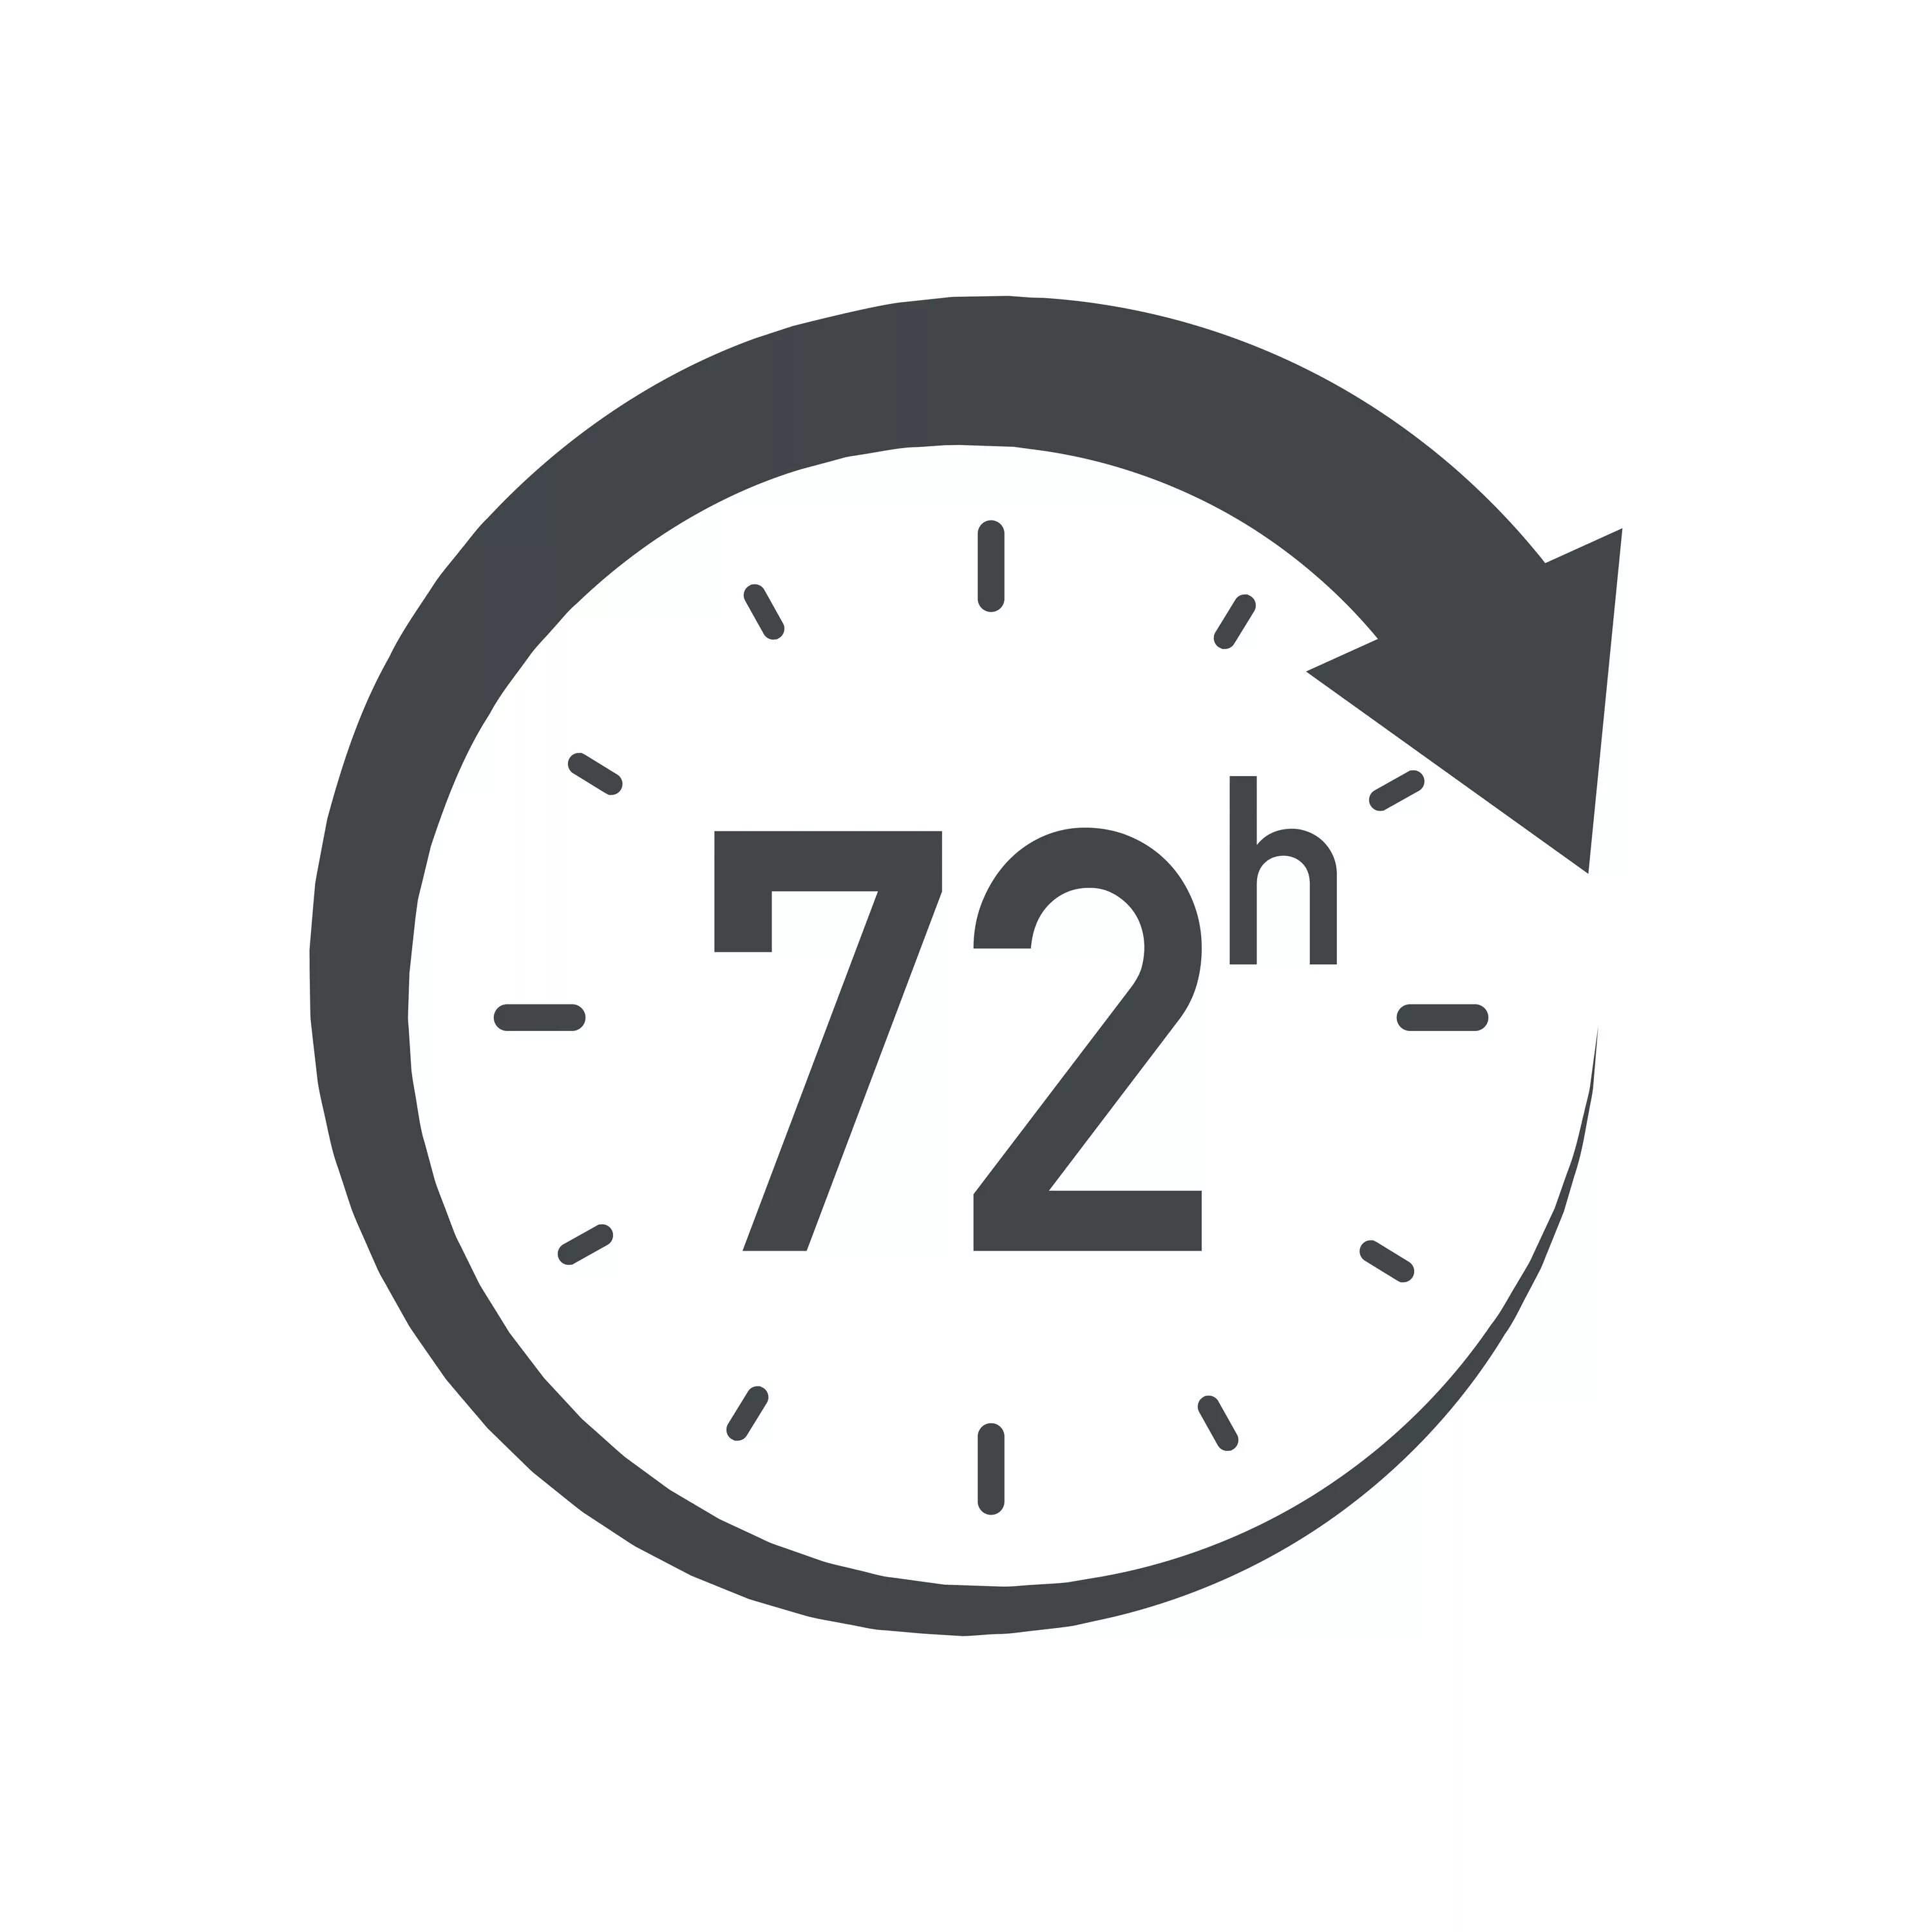 Значок 24 часа. 24 Часа вектор. 24/7 Логотип. Часы вектор 24 часа. Людьми 24 ч в